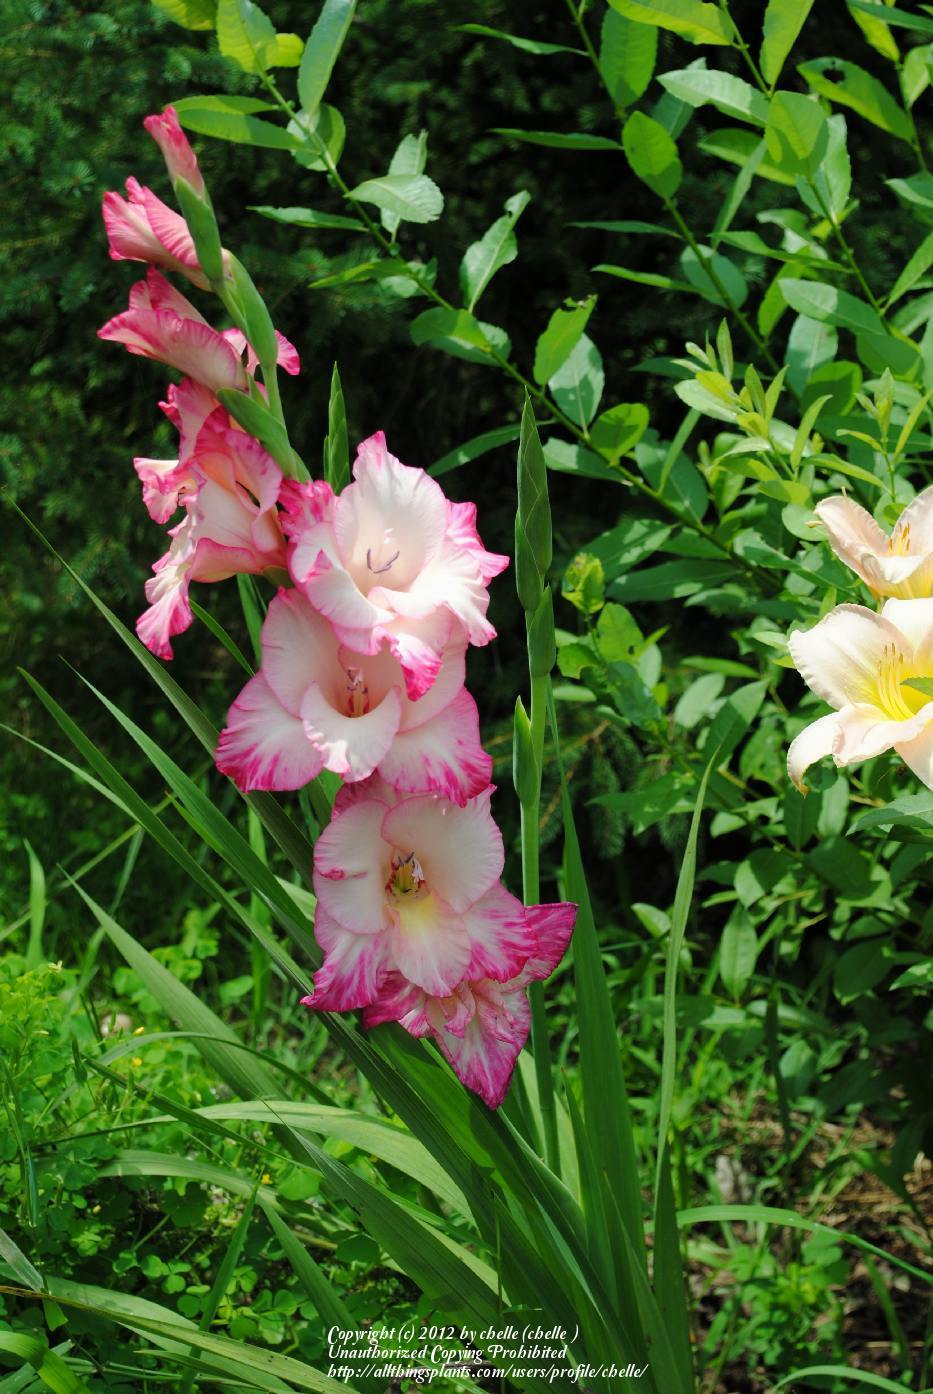 Photo of Hybrid Gladiola (Gladiolus x gandavensis 'Priscilla') uploaded by chelle